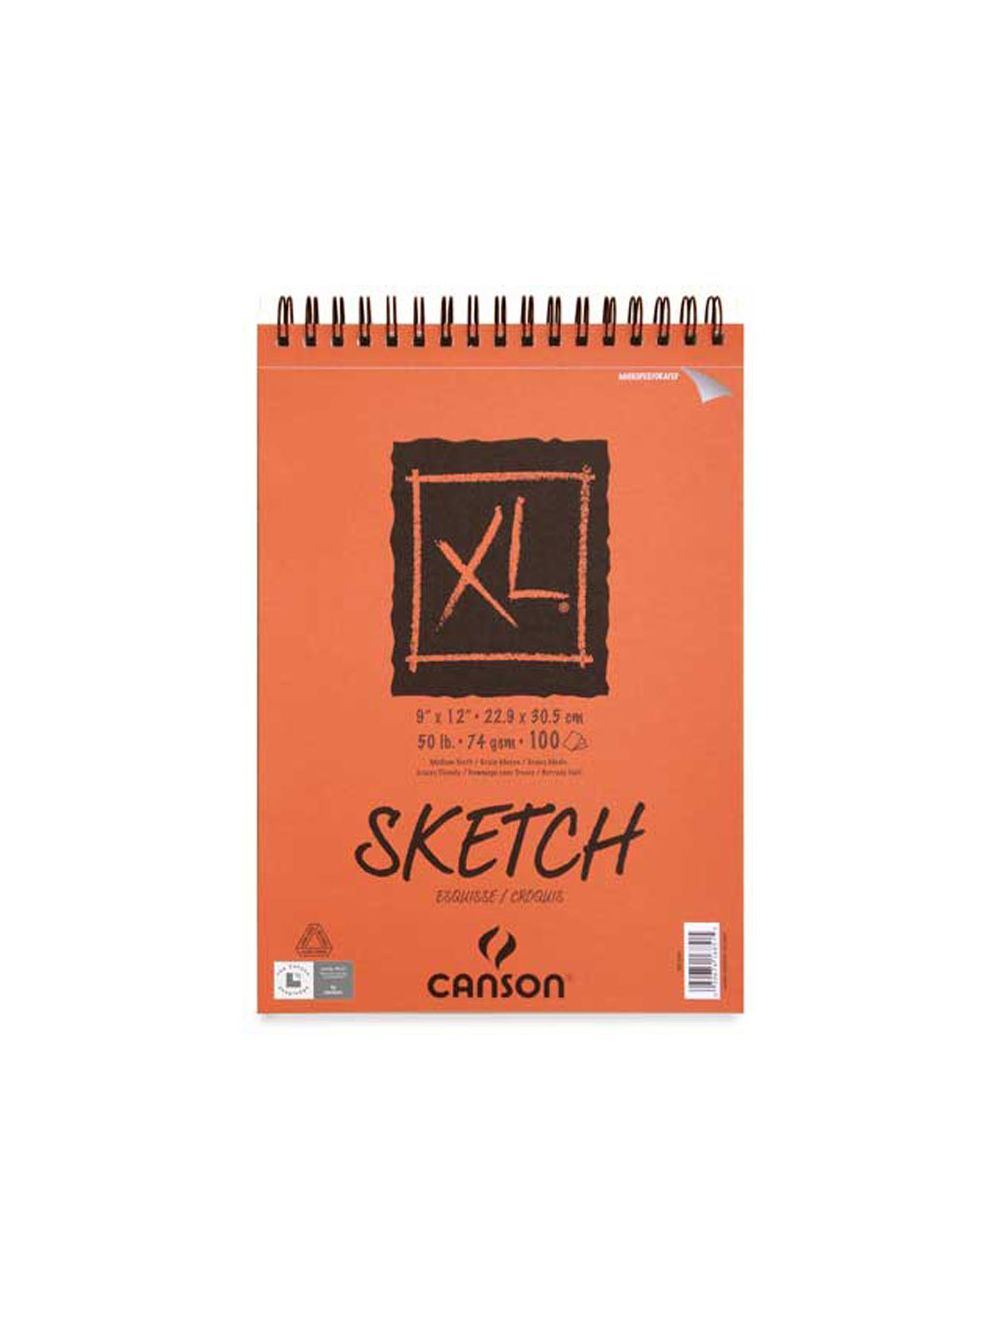 Canson XL Sketch Pad 18x24